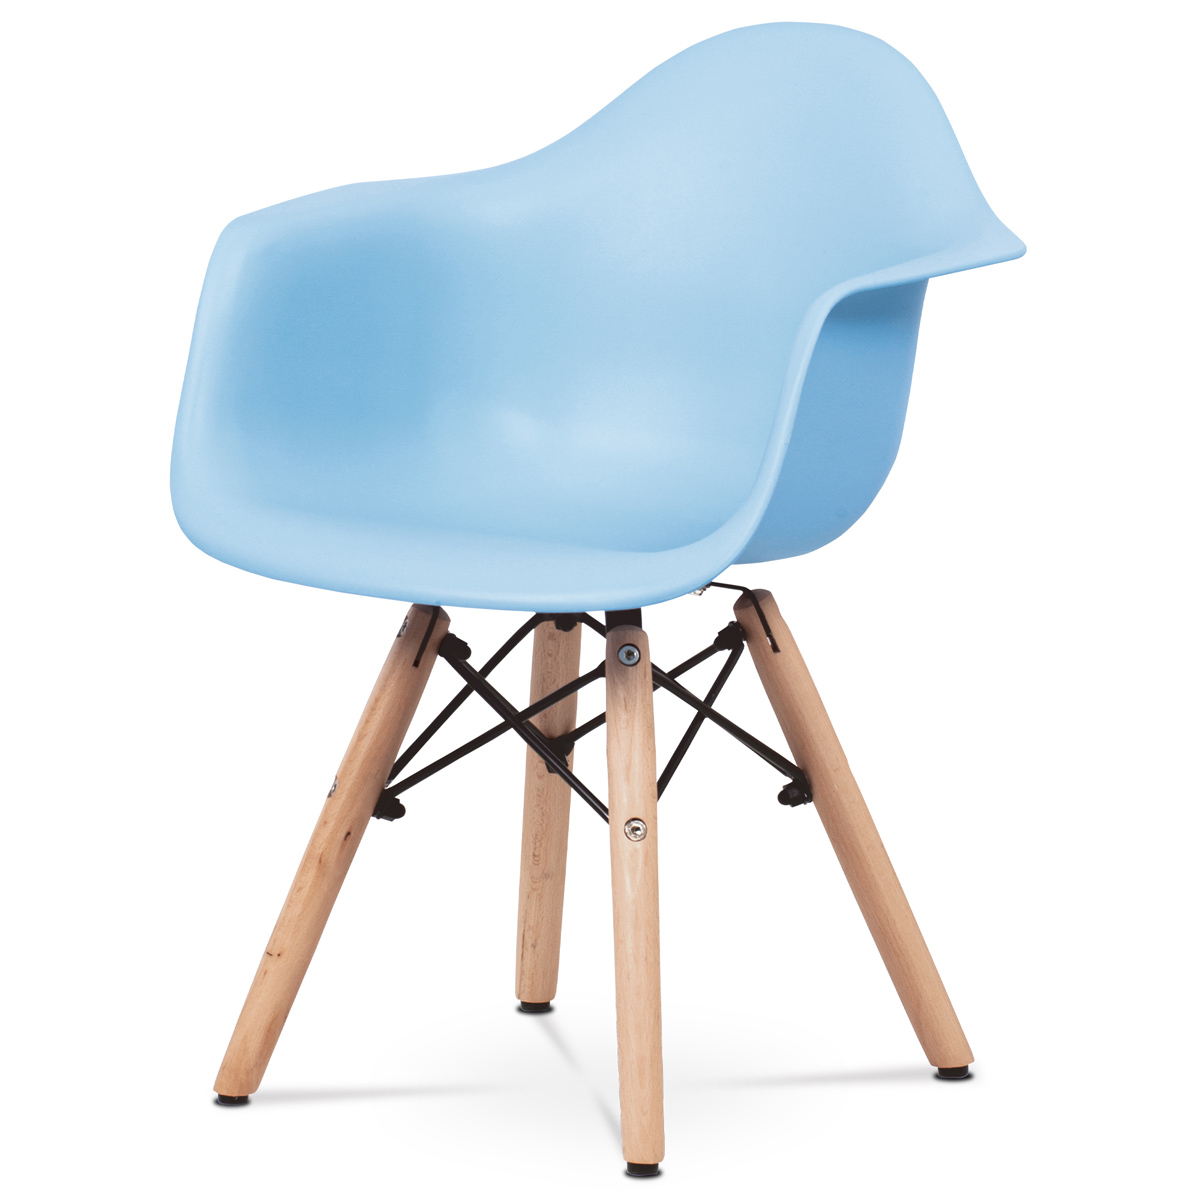 Dětská židle, světle modrá plastová skořepina, nohy masiv buk, přírodní odstín